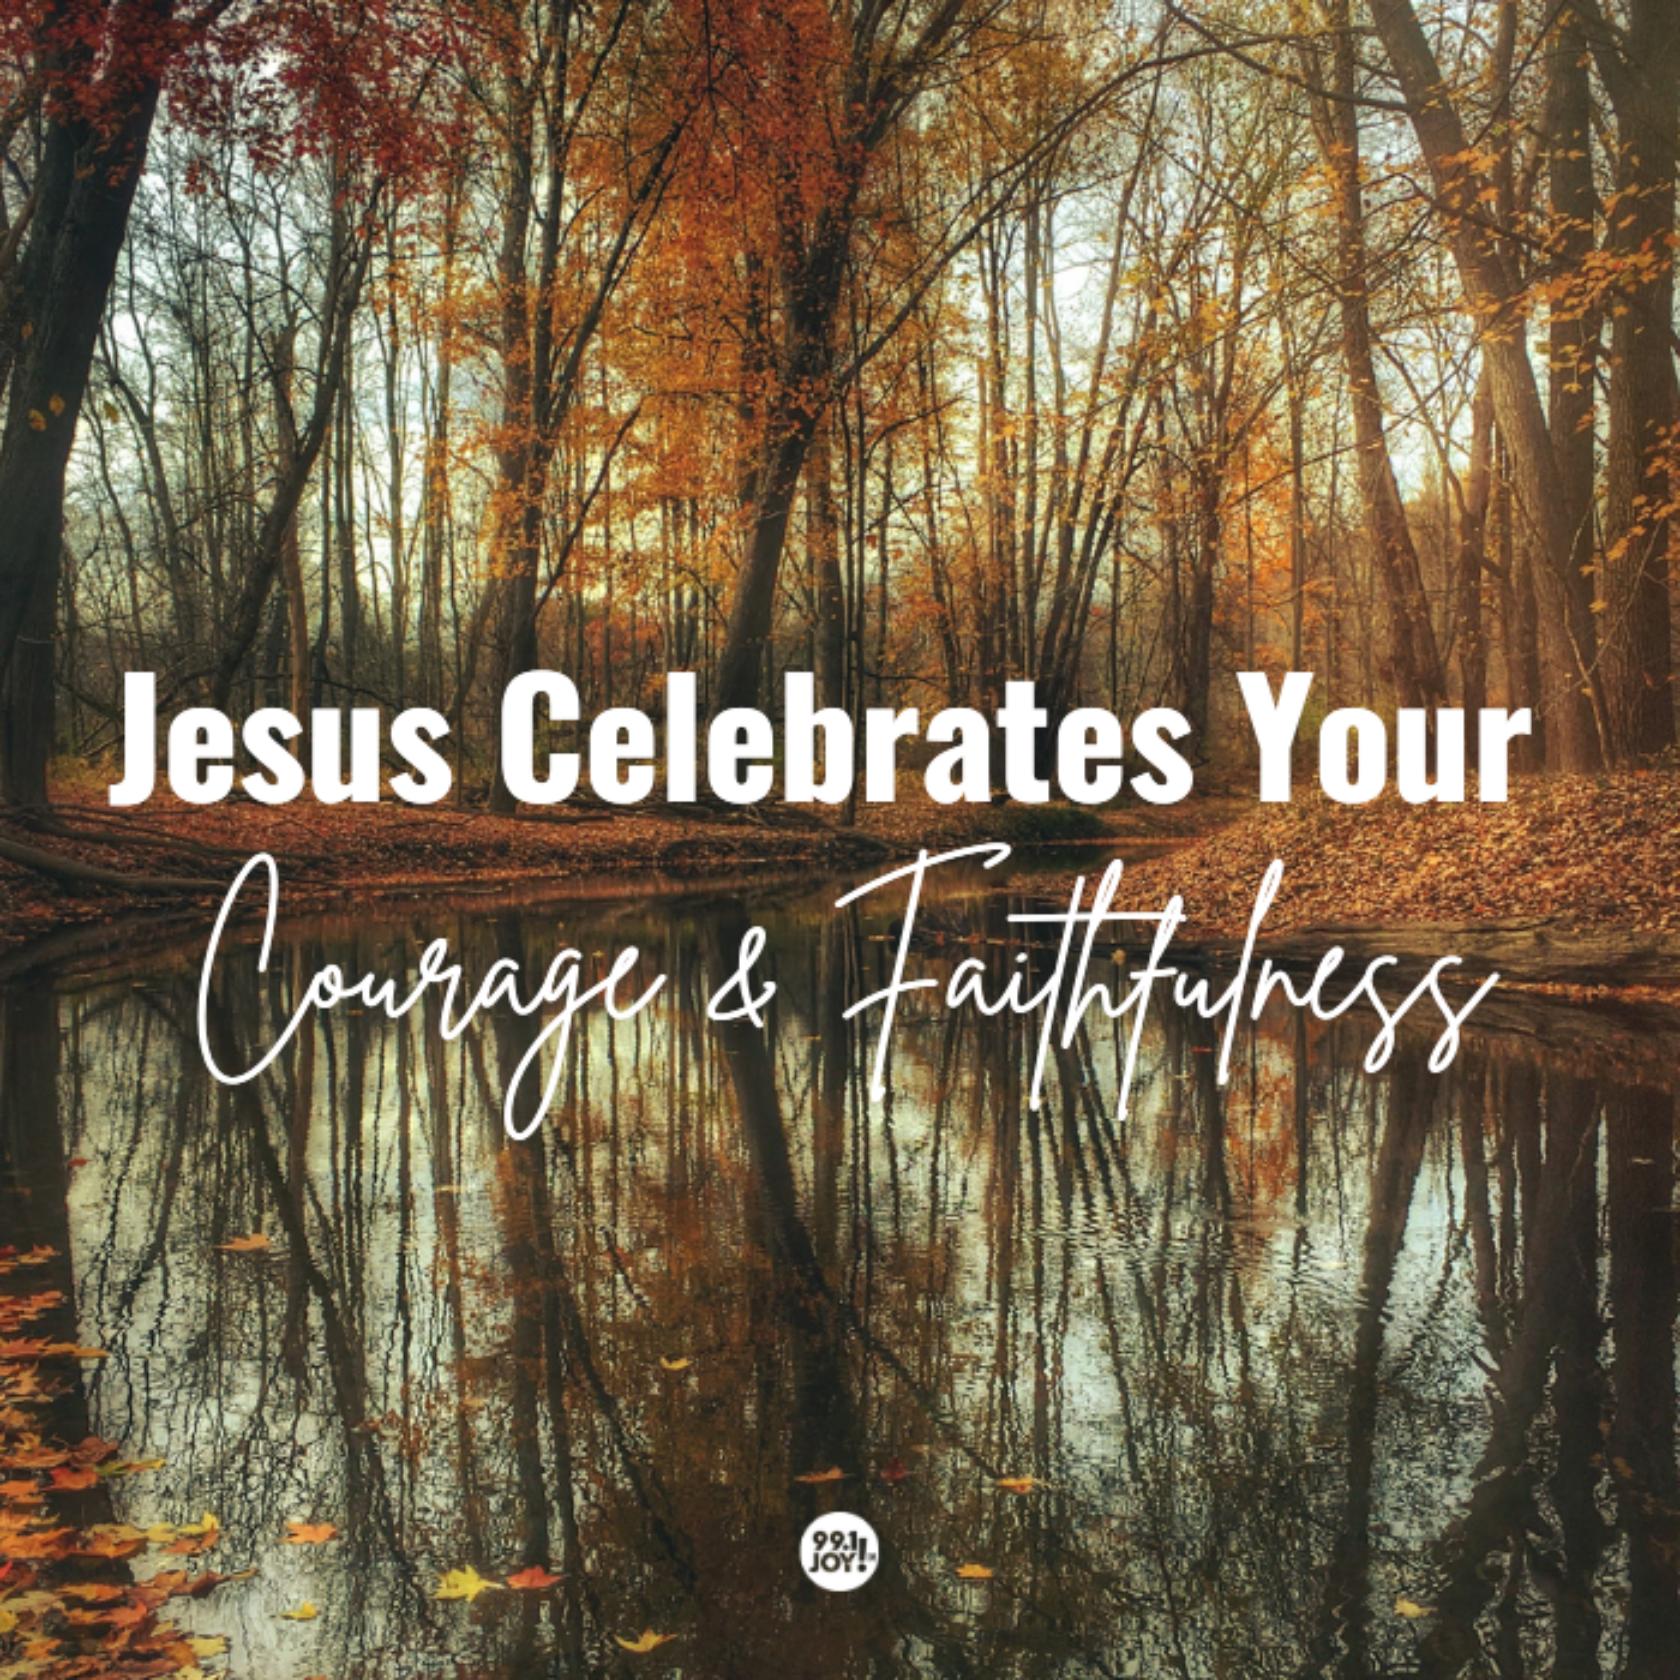 Jesus Celebrates Your Courage And Faithfulness